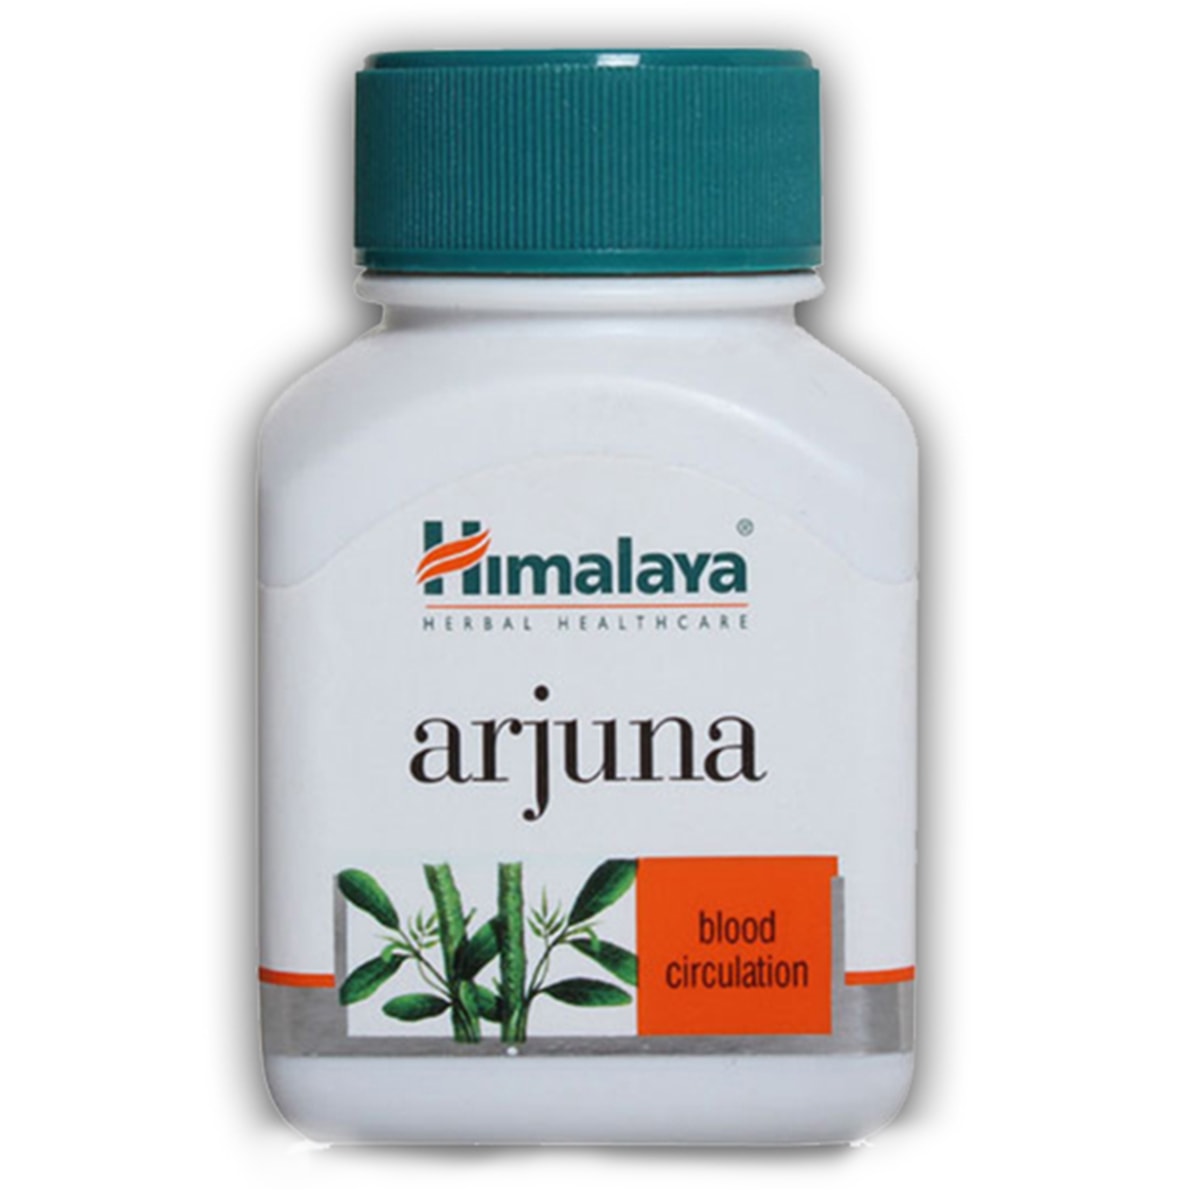 Buy Himalaya Herbals Arjuna Blood Circulation - 60 Capsules